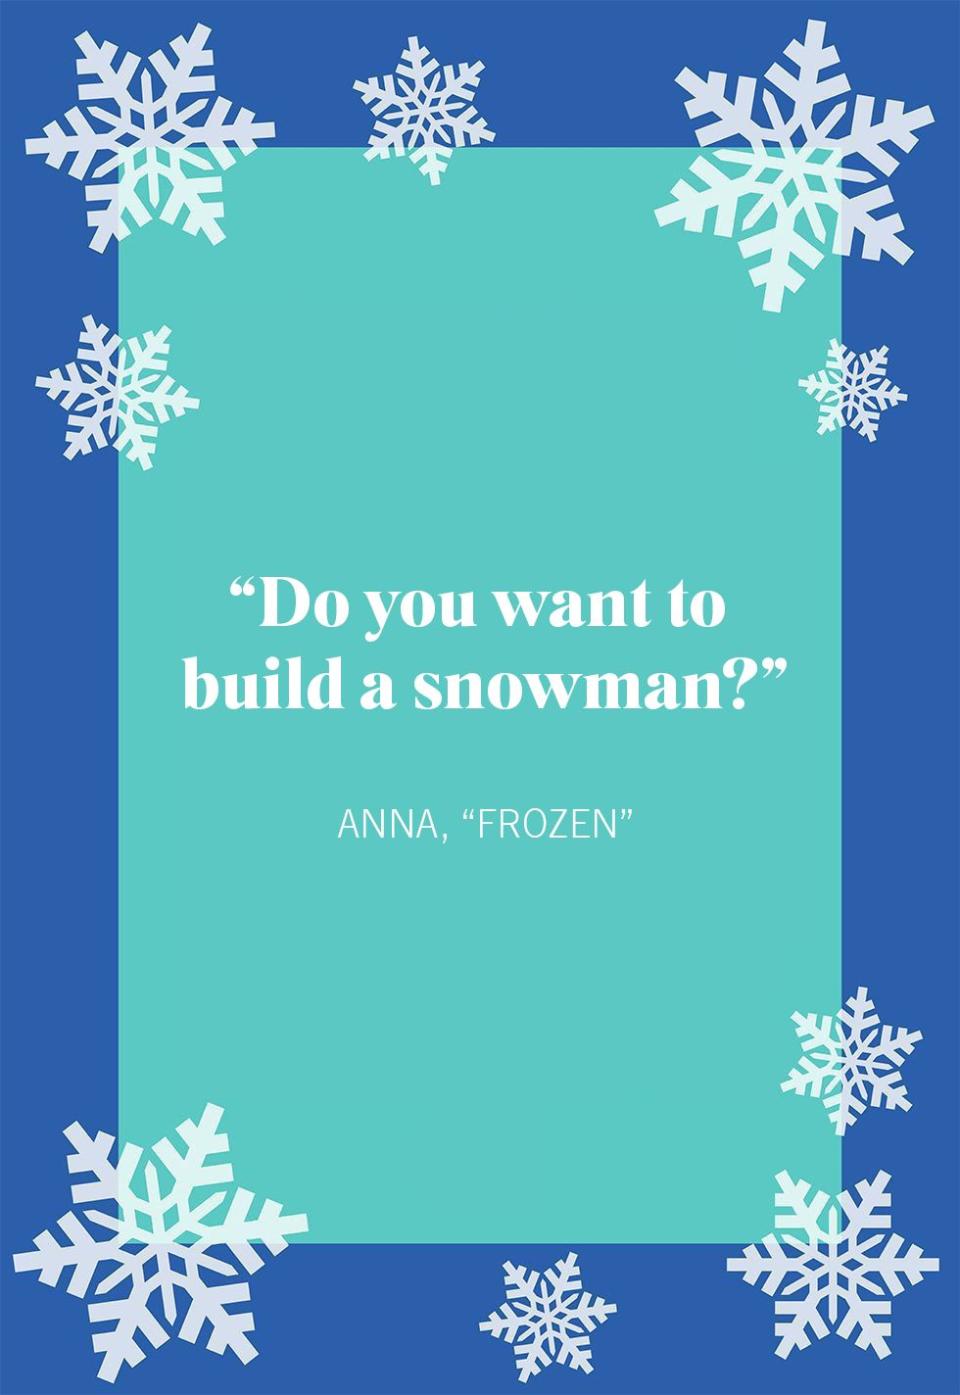 Anna, “Frozen”